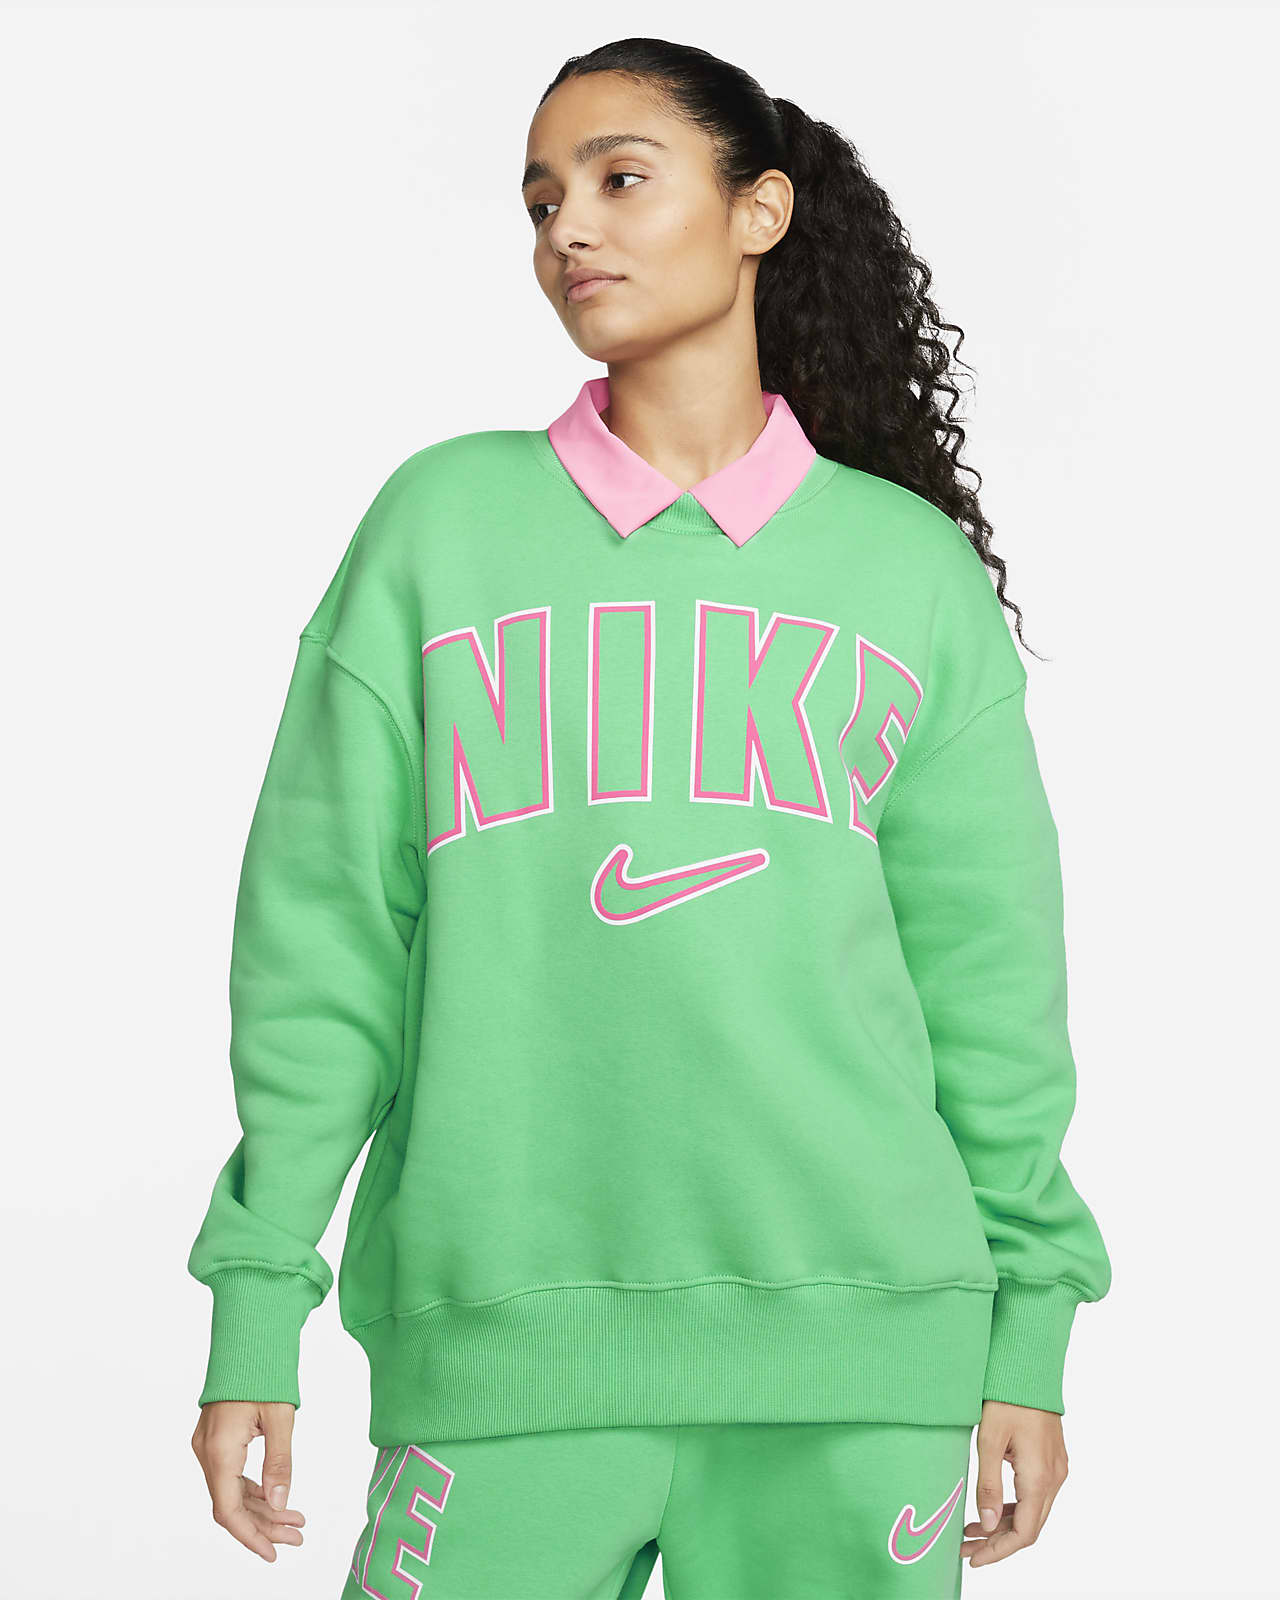 Amerika breedte platform Nike Sportswear Phoenix Fleece Women's Oversized Crew-neck Sweatshirt. Nike  LU